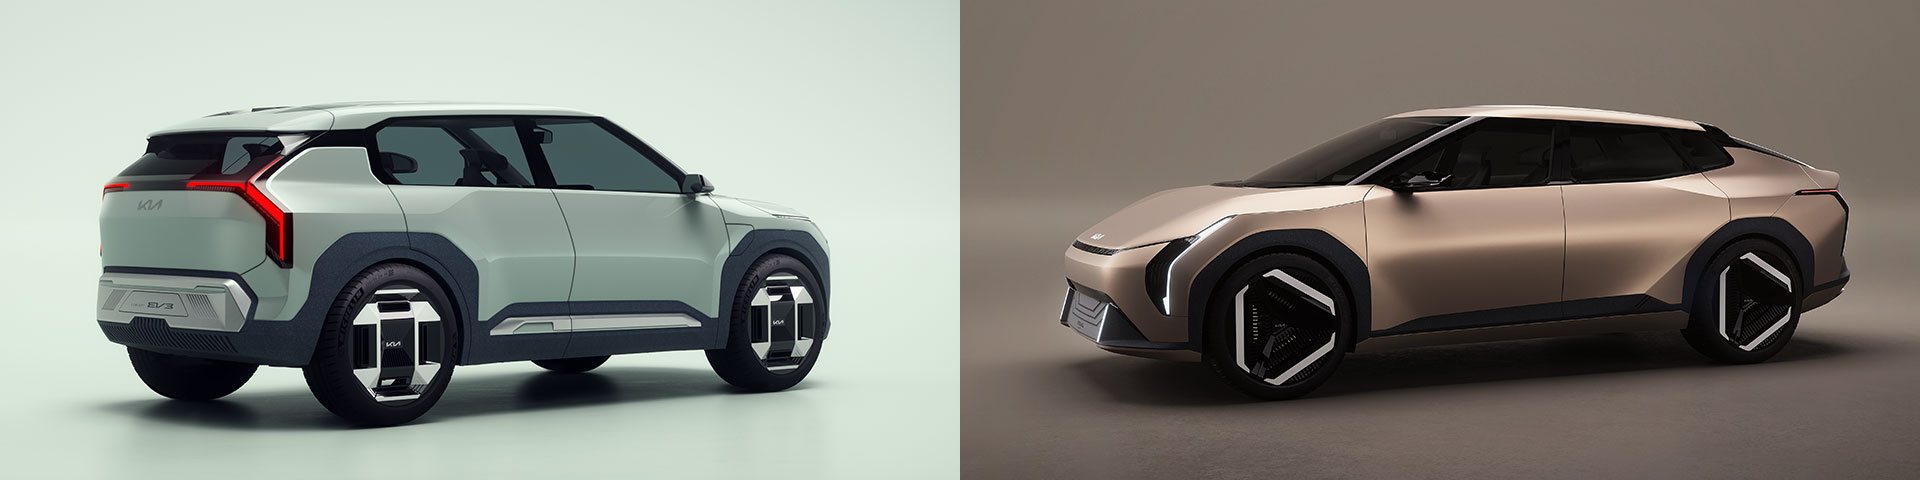 A Kia quer levar a sua ambição mais além com estes concept cars